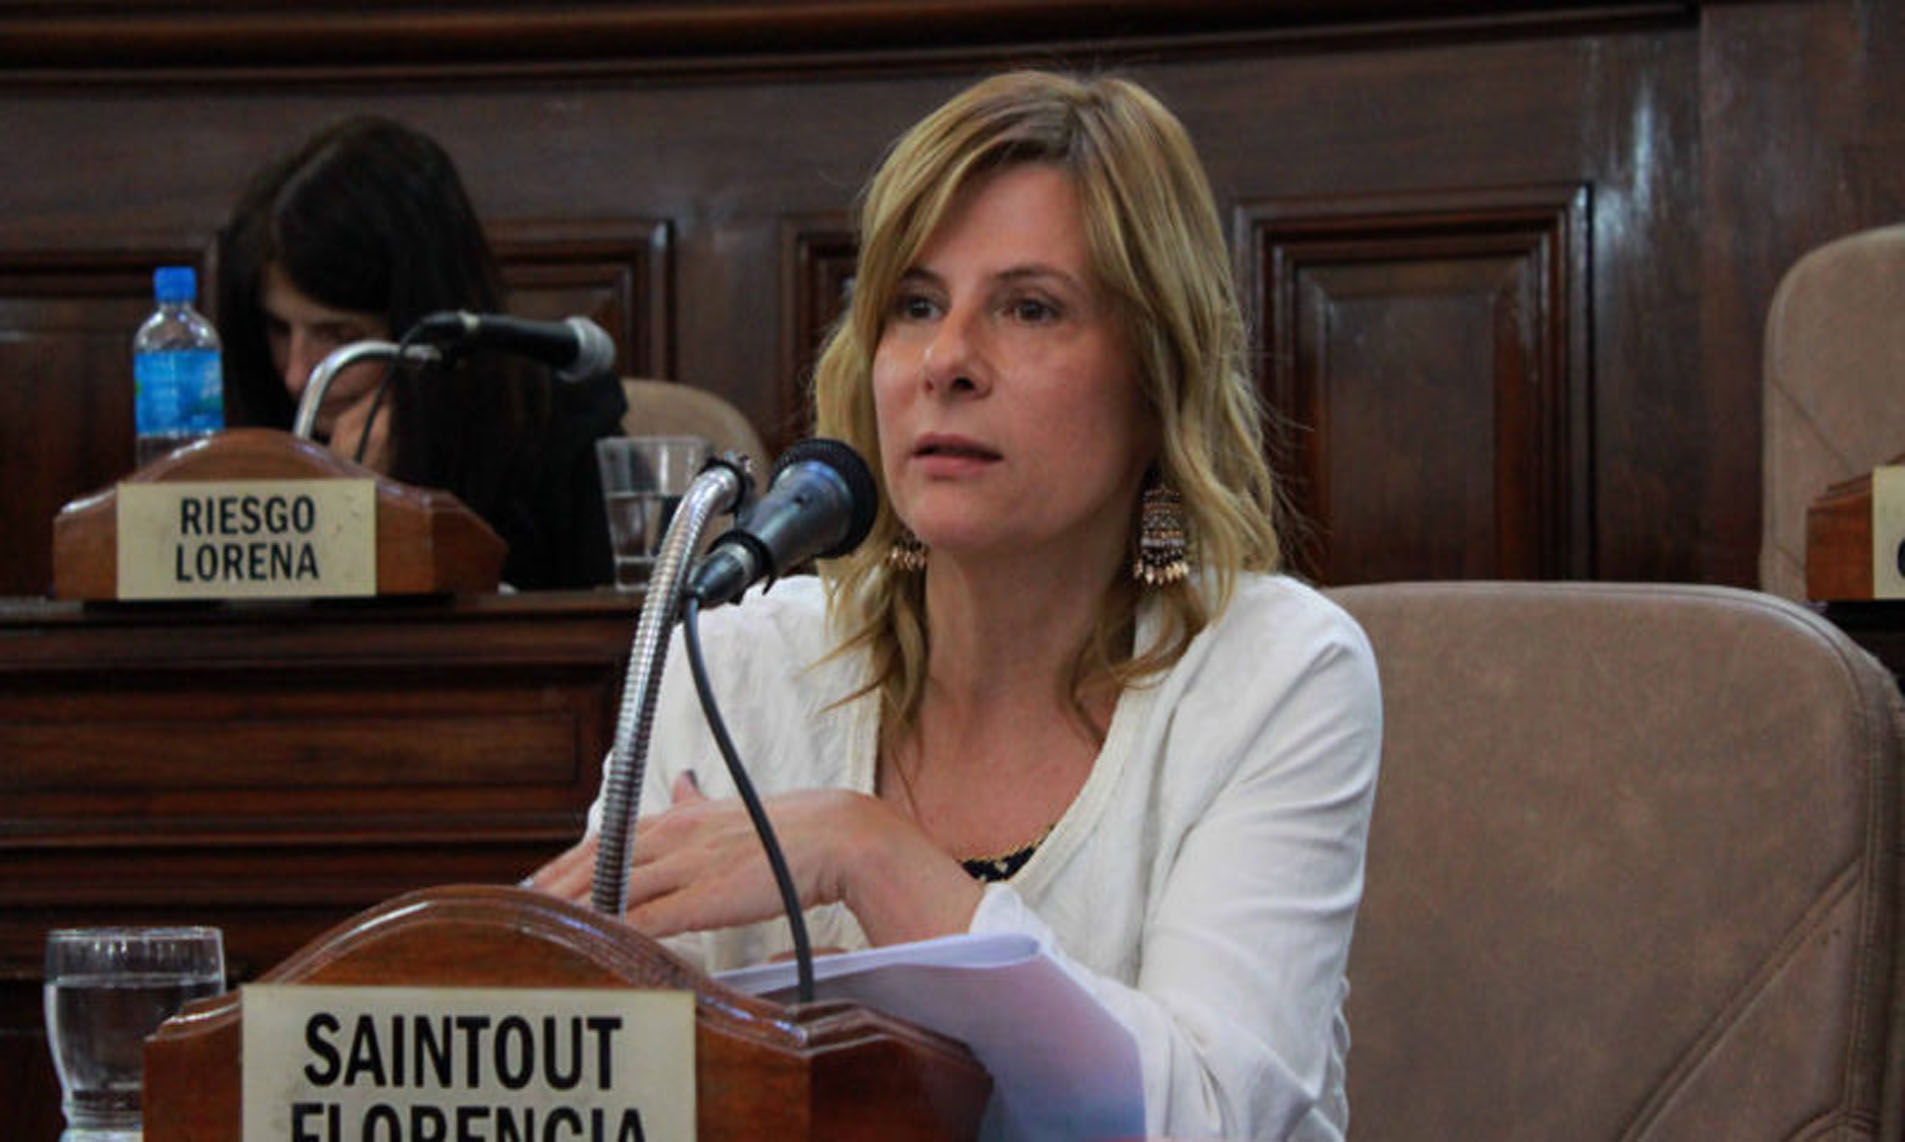 Saintout lapidaria con Vidal por la aprobación del Presupuesto